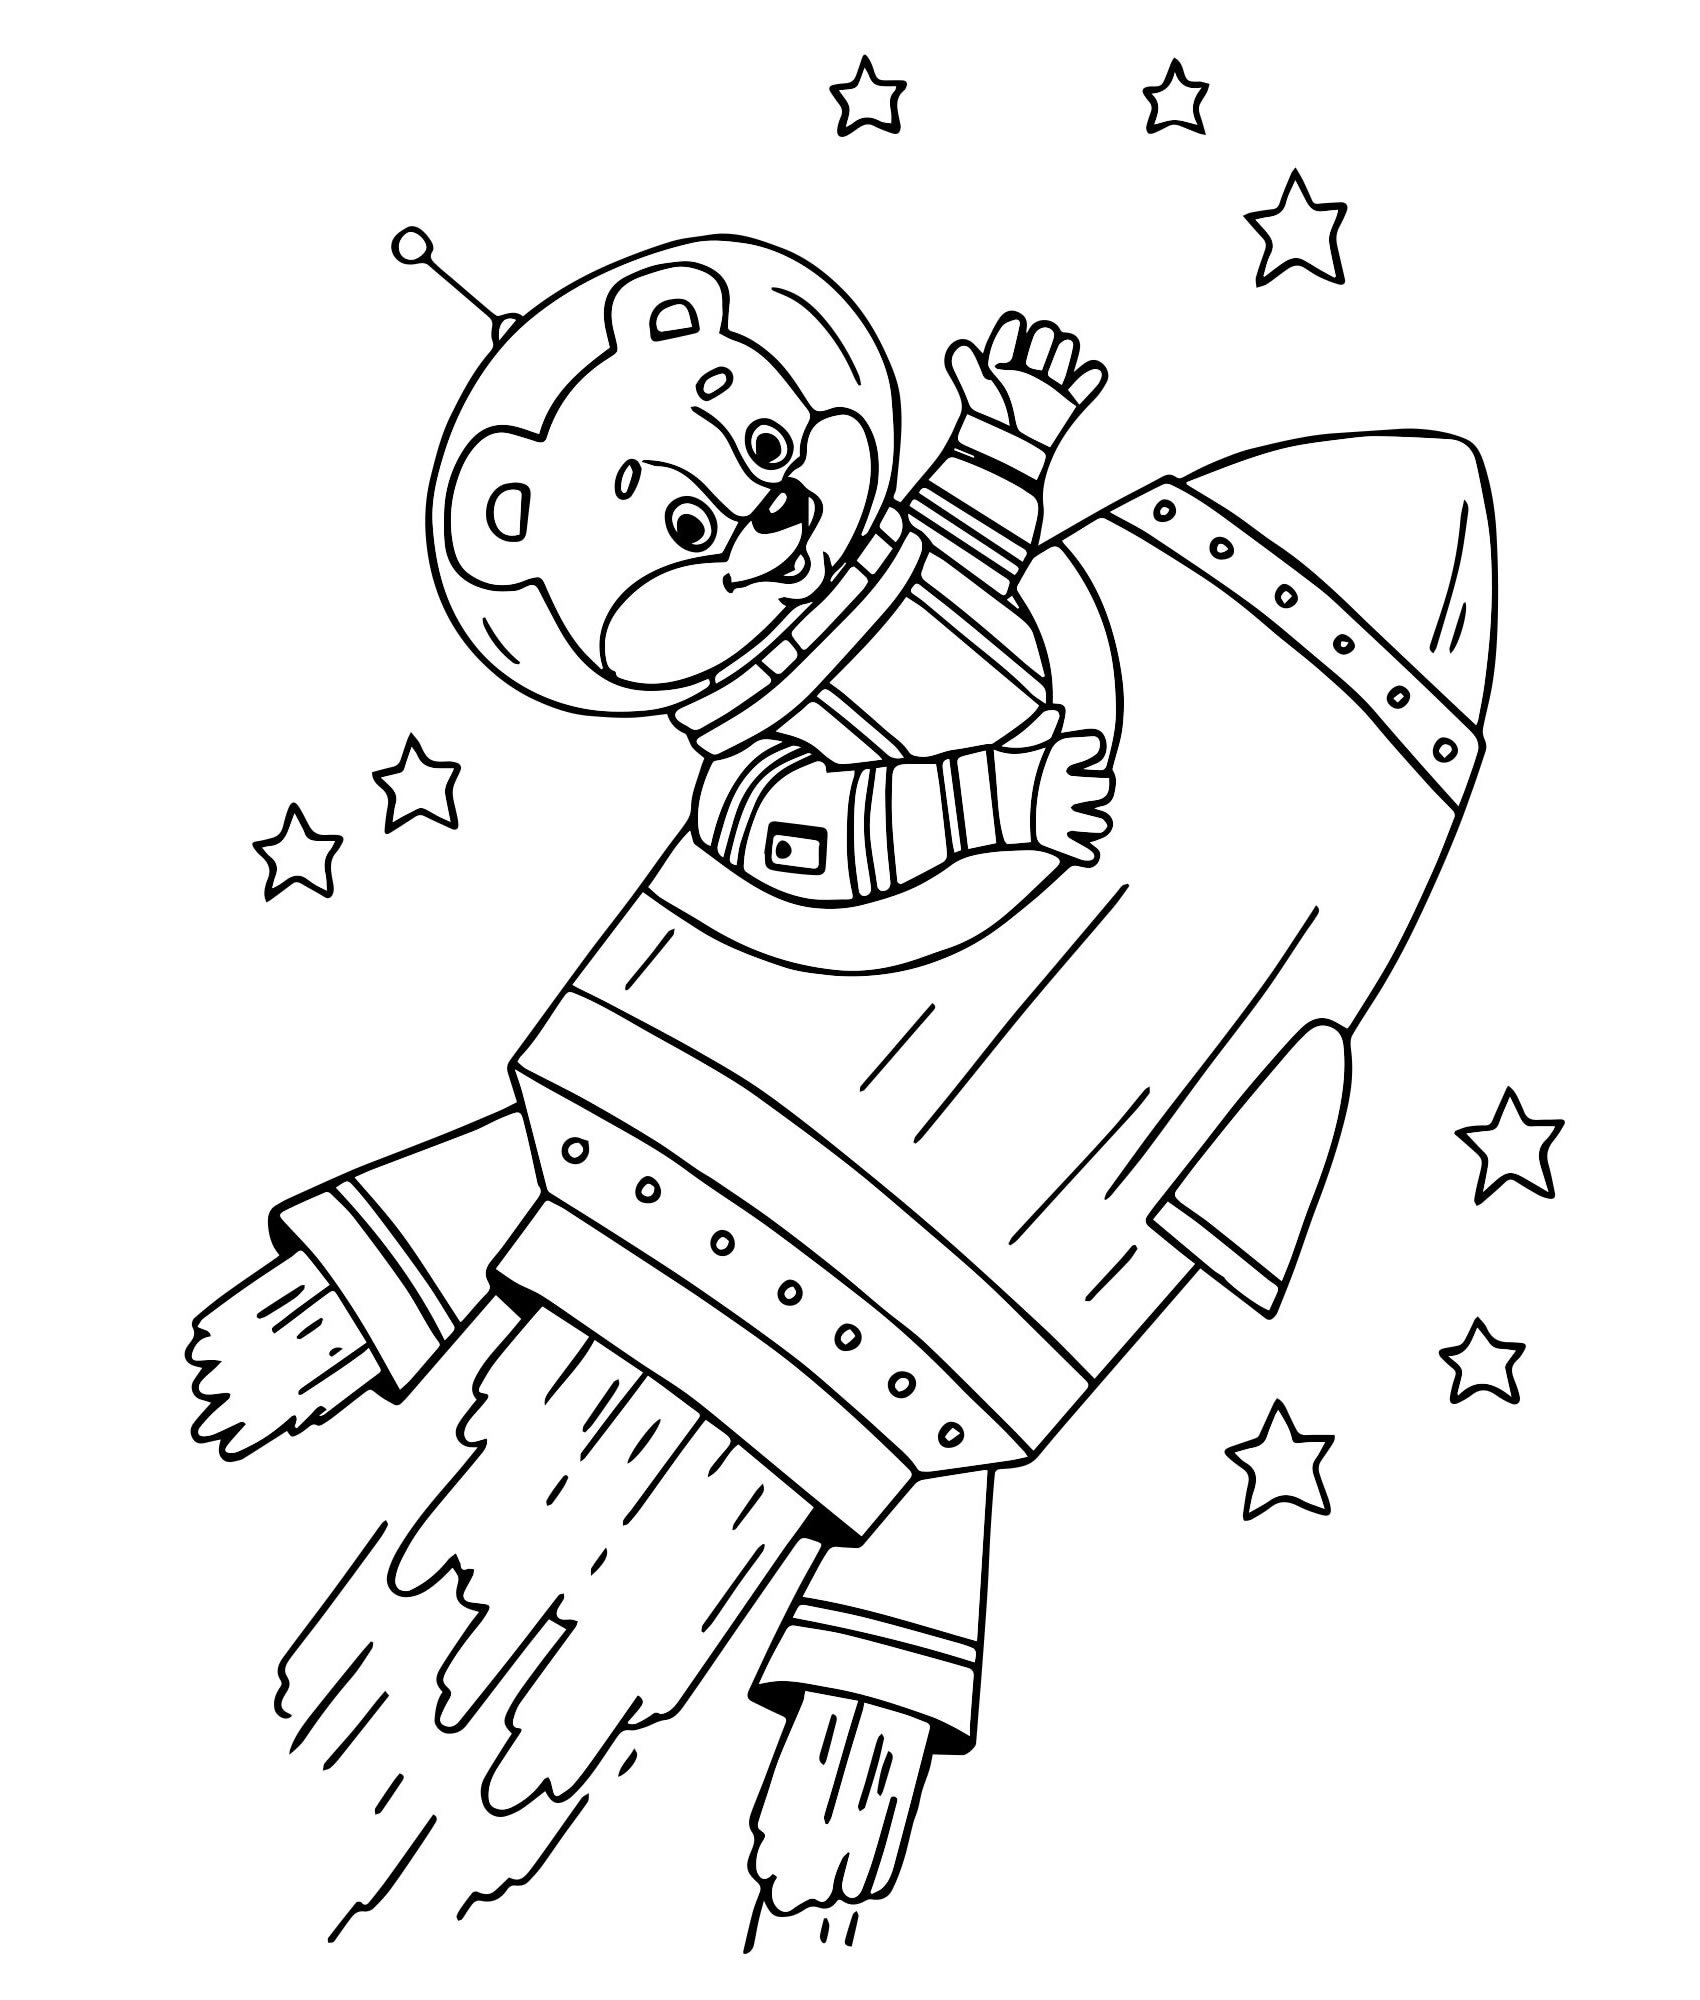 Рисунок на день космонавтики раскраска. Раскраска. В космосе. Космонавт раскраска для детей. Раскраски ко Дню космонавтики. Космос раскраска для детей.